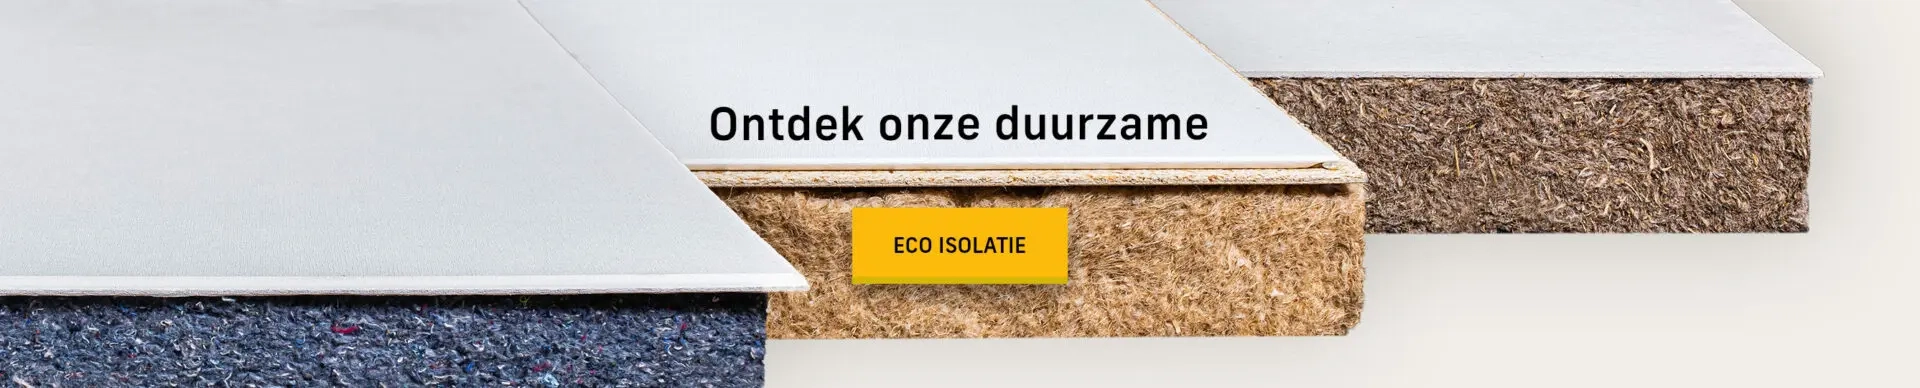 Eco isolatie van Isolatiehandel.nl